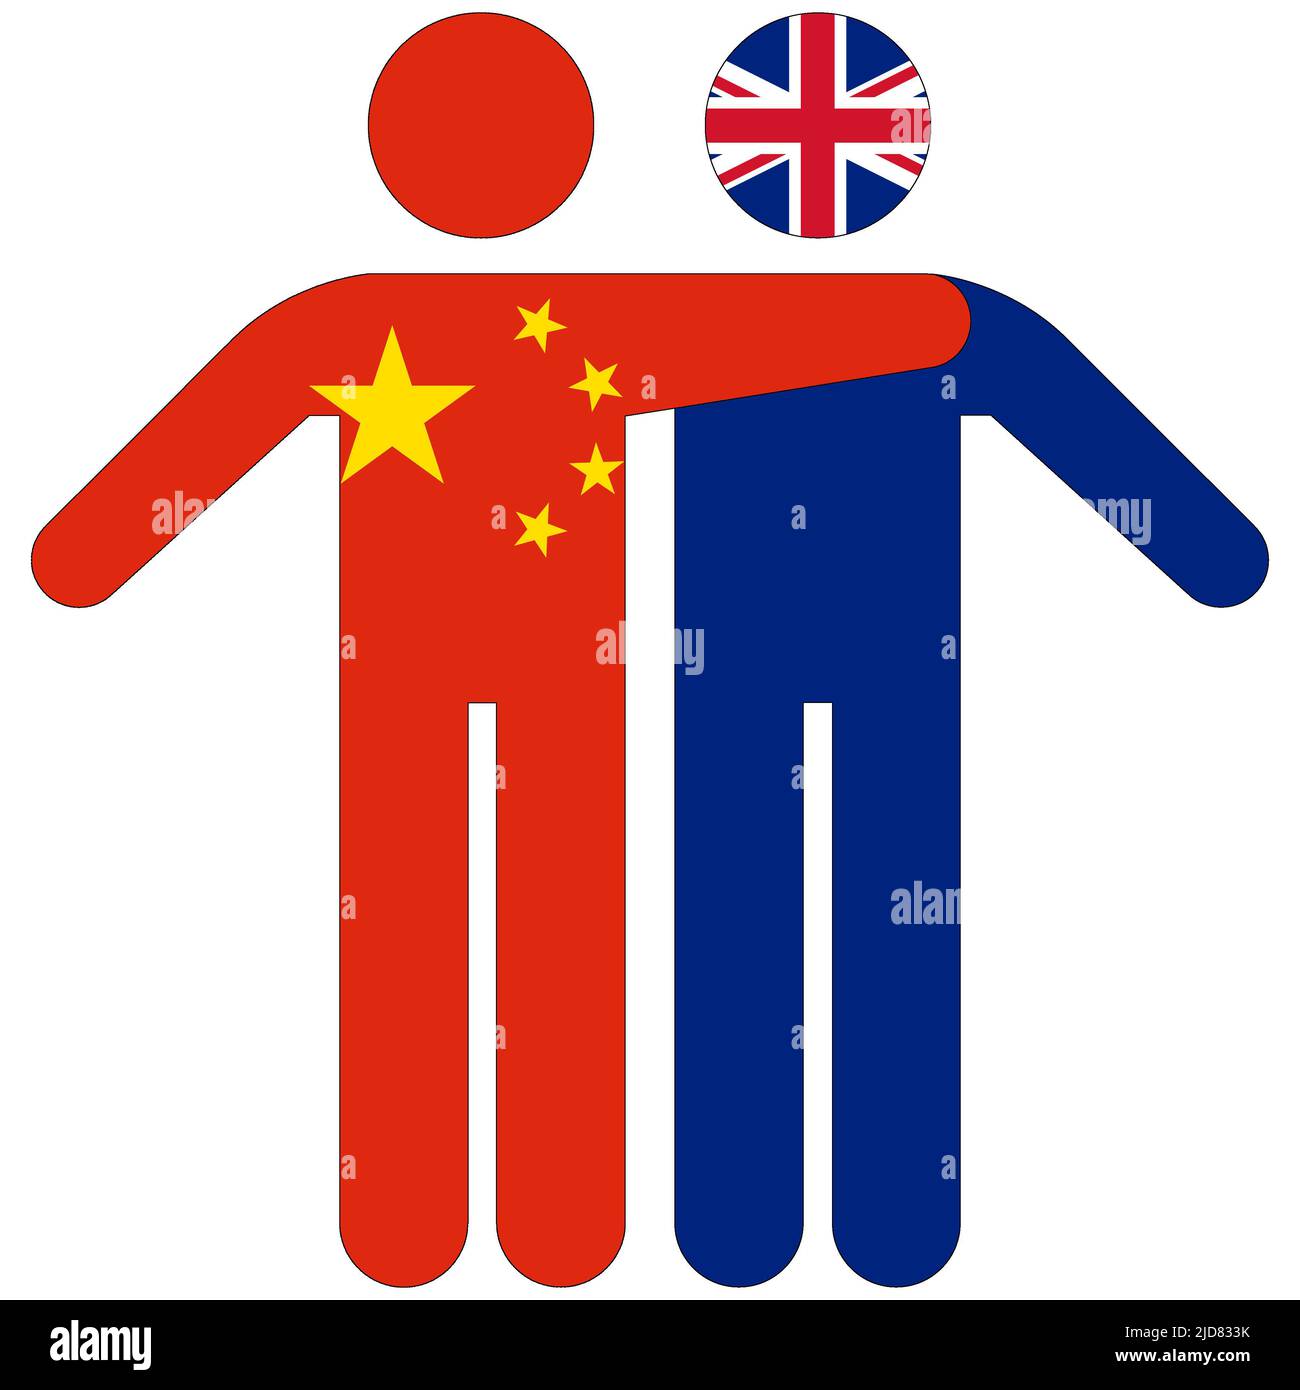 China - UK : friendship concept on white background Stock Photo